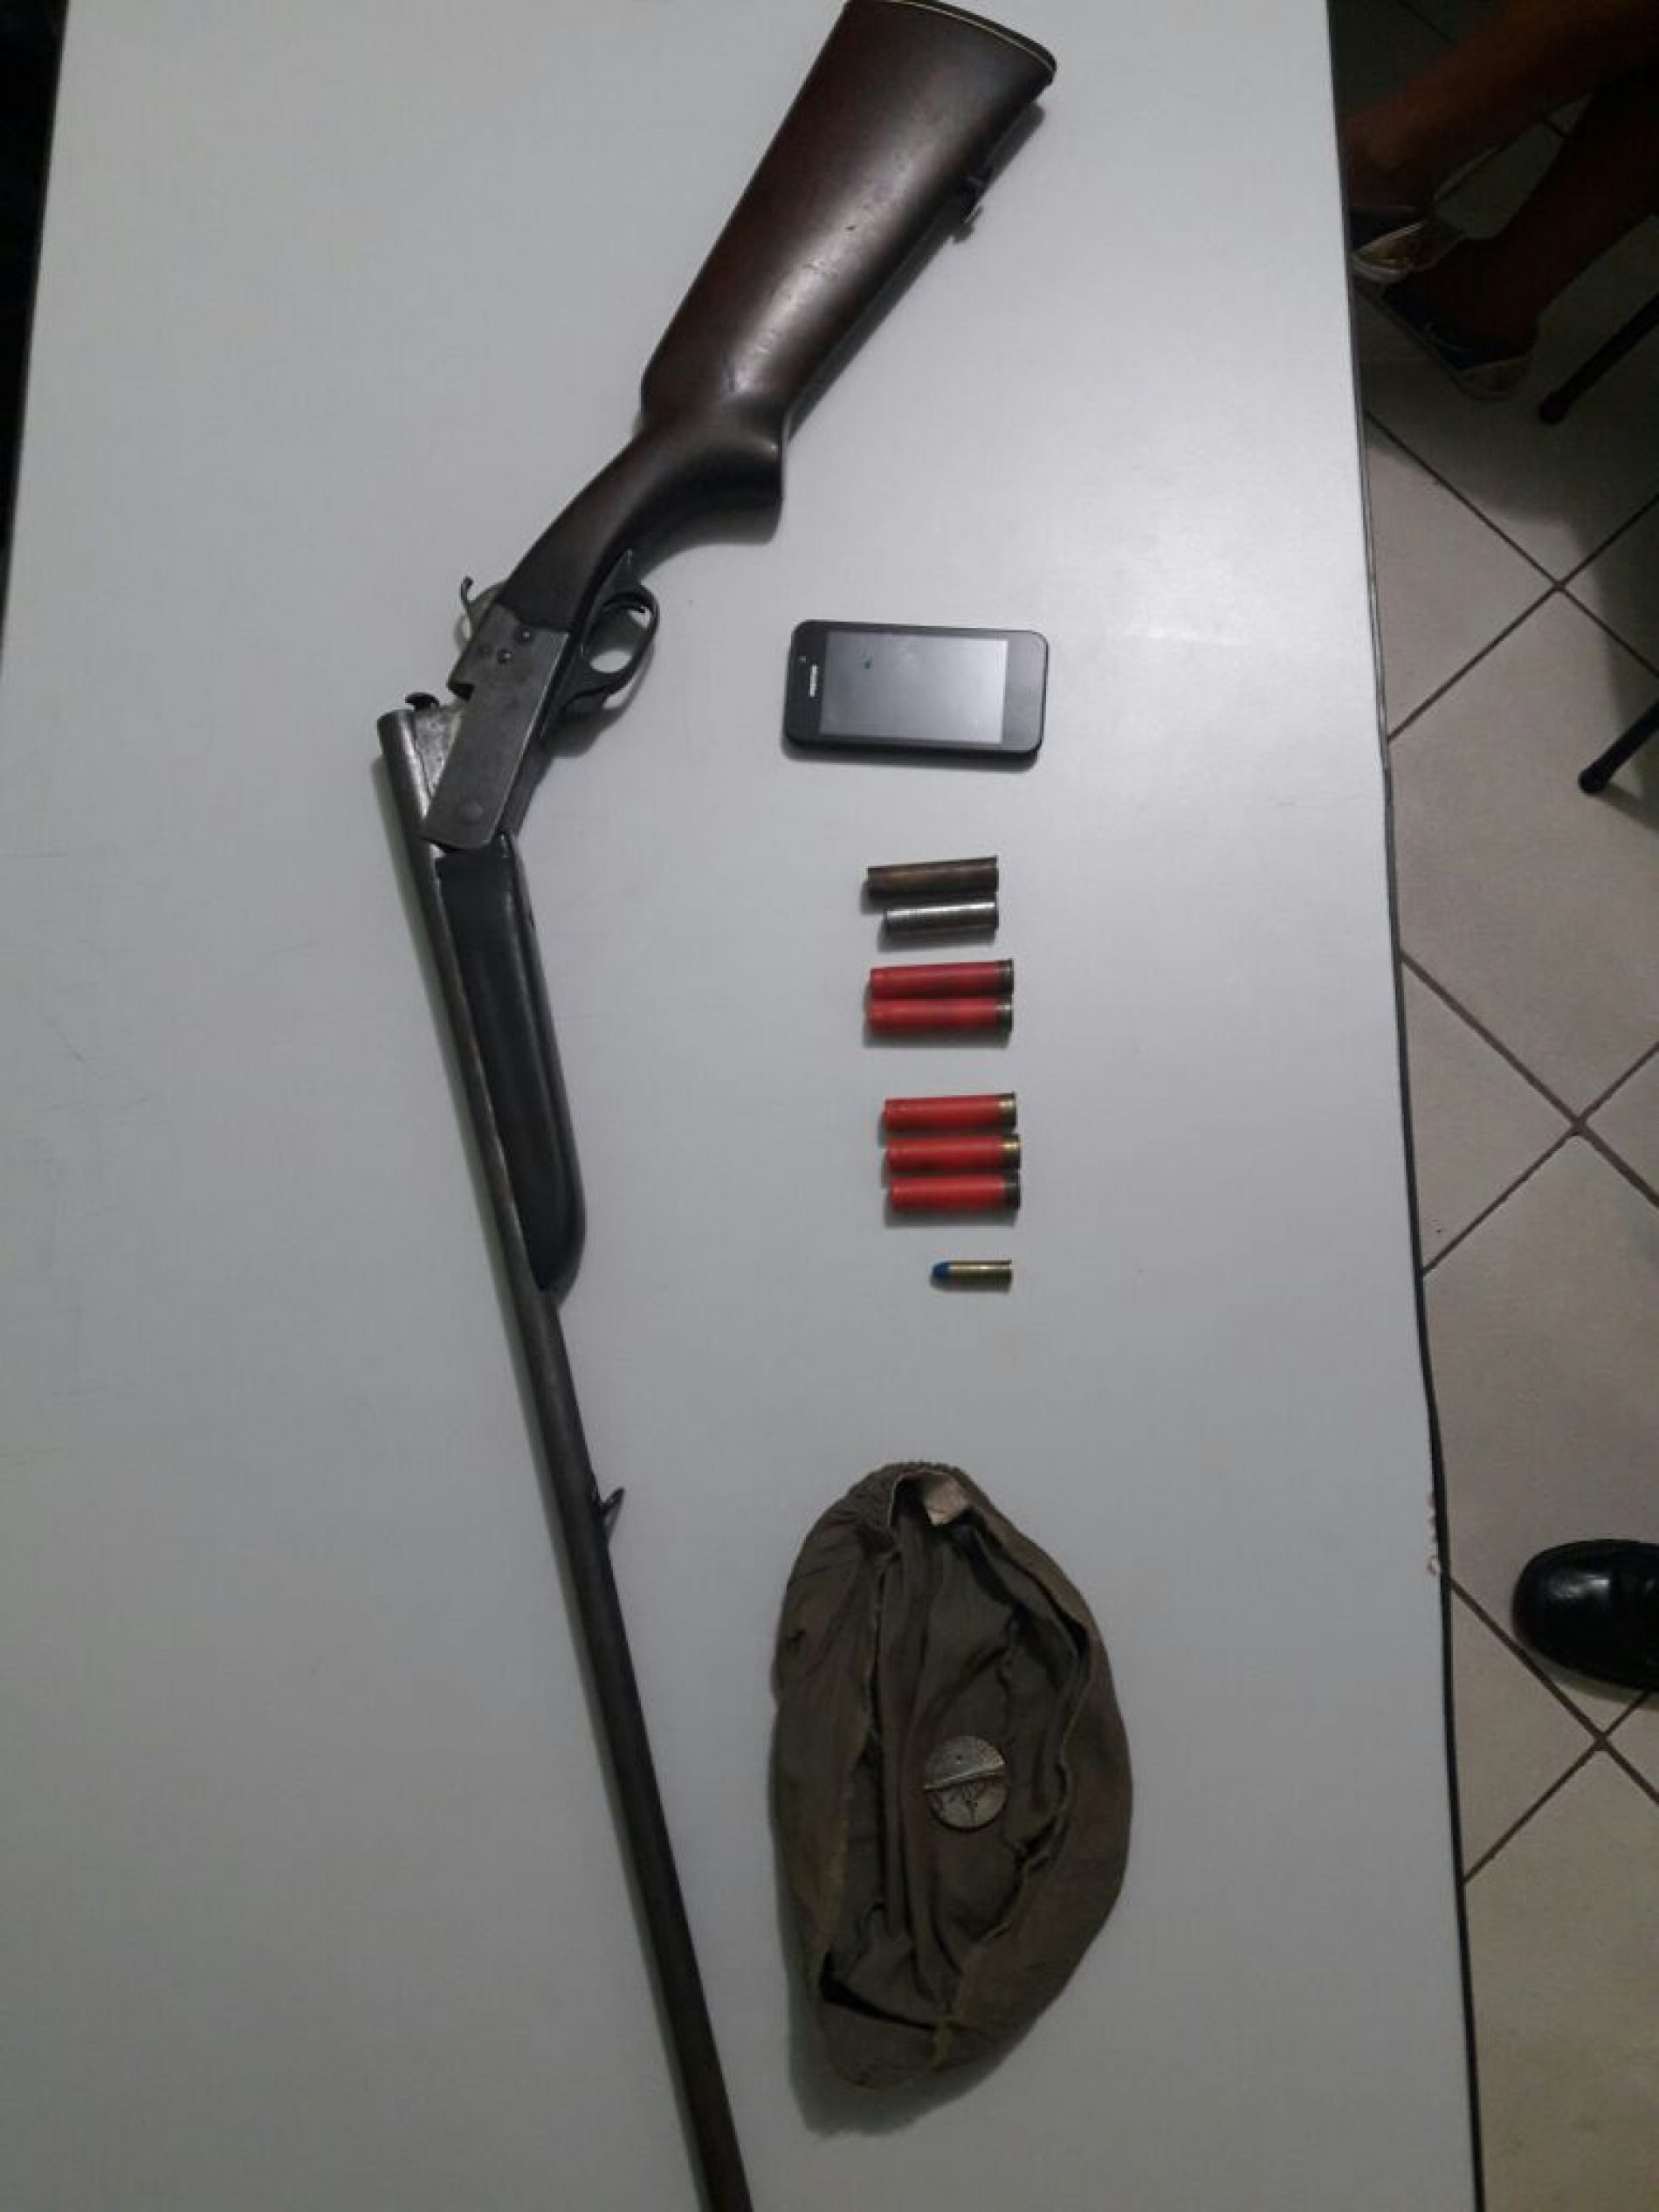 COLÔMBIA: Homem é flagrado em canavial com arma e munições